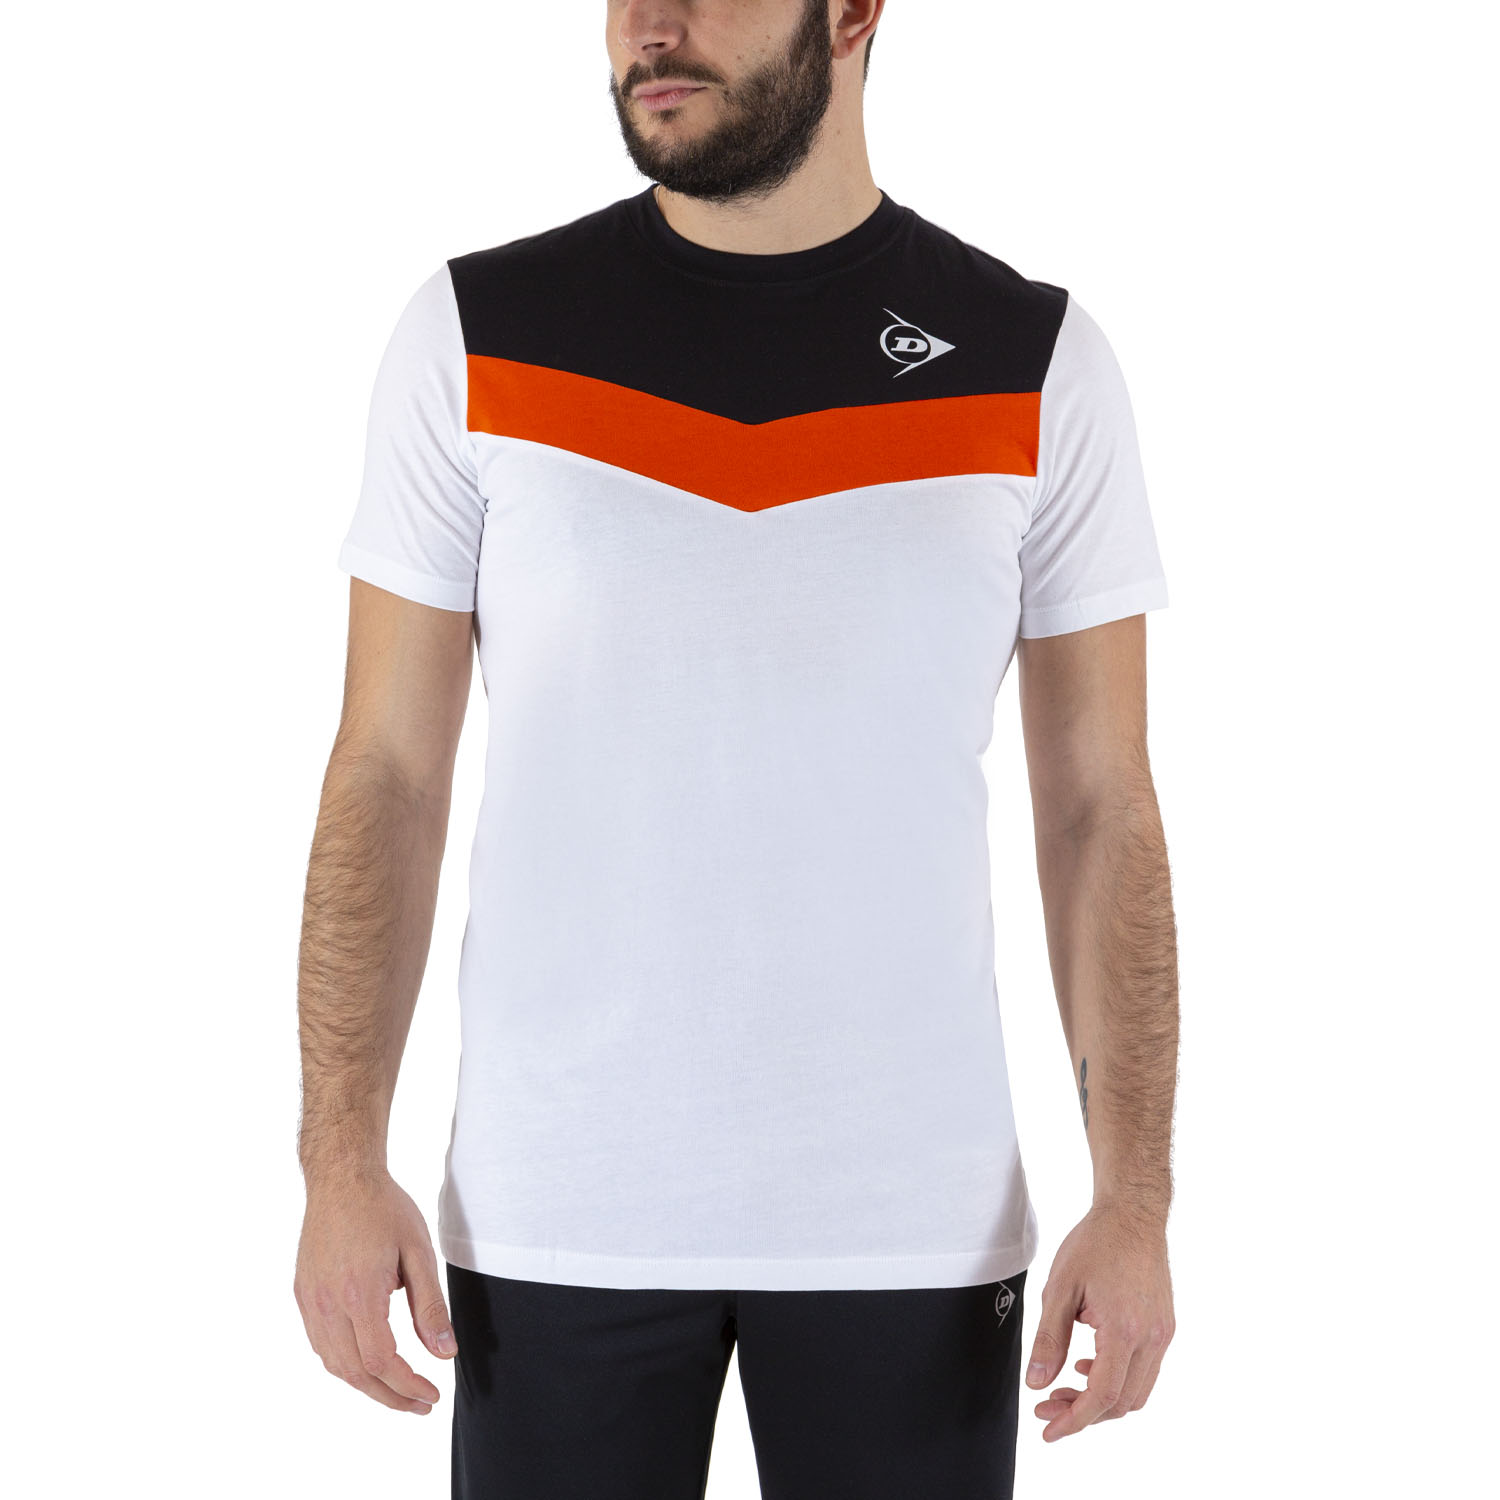 Compra Alargar magia Dunlop Crew Essentials Camiseta de Tenis Hombre - White/Anthra